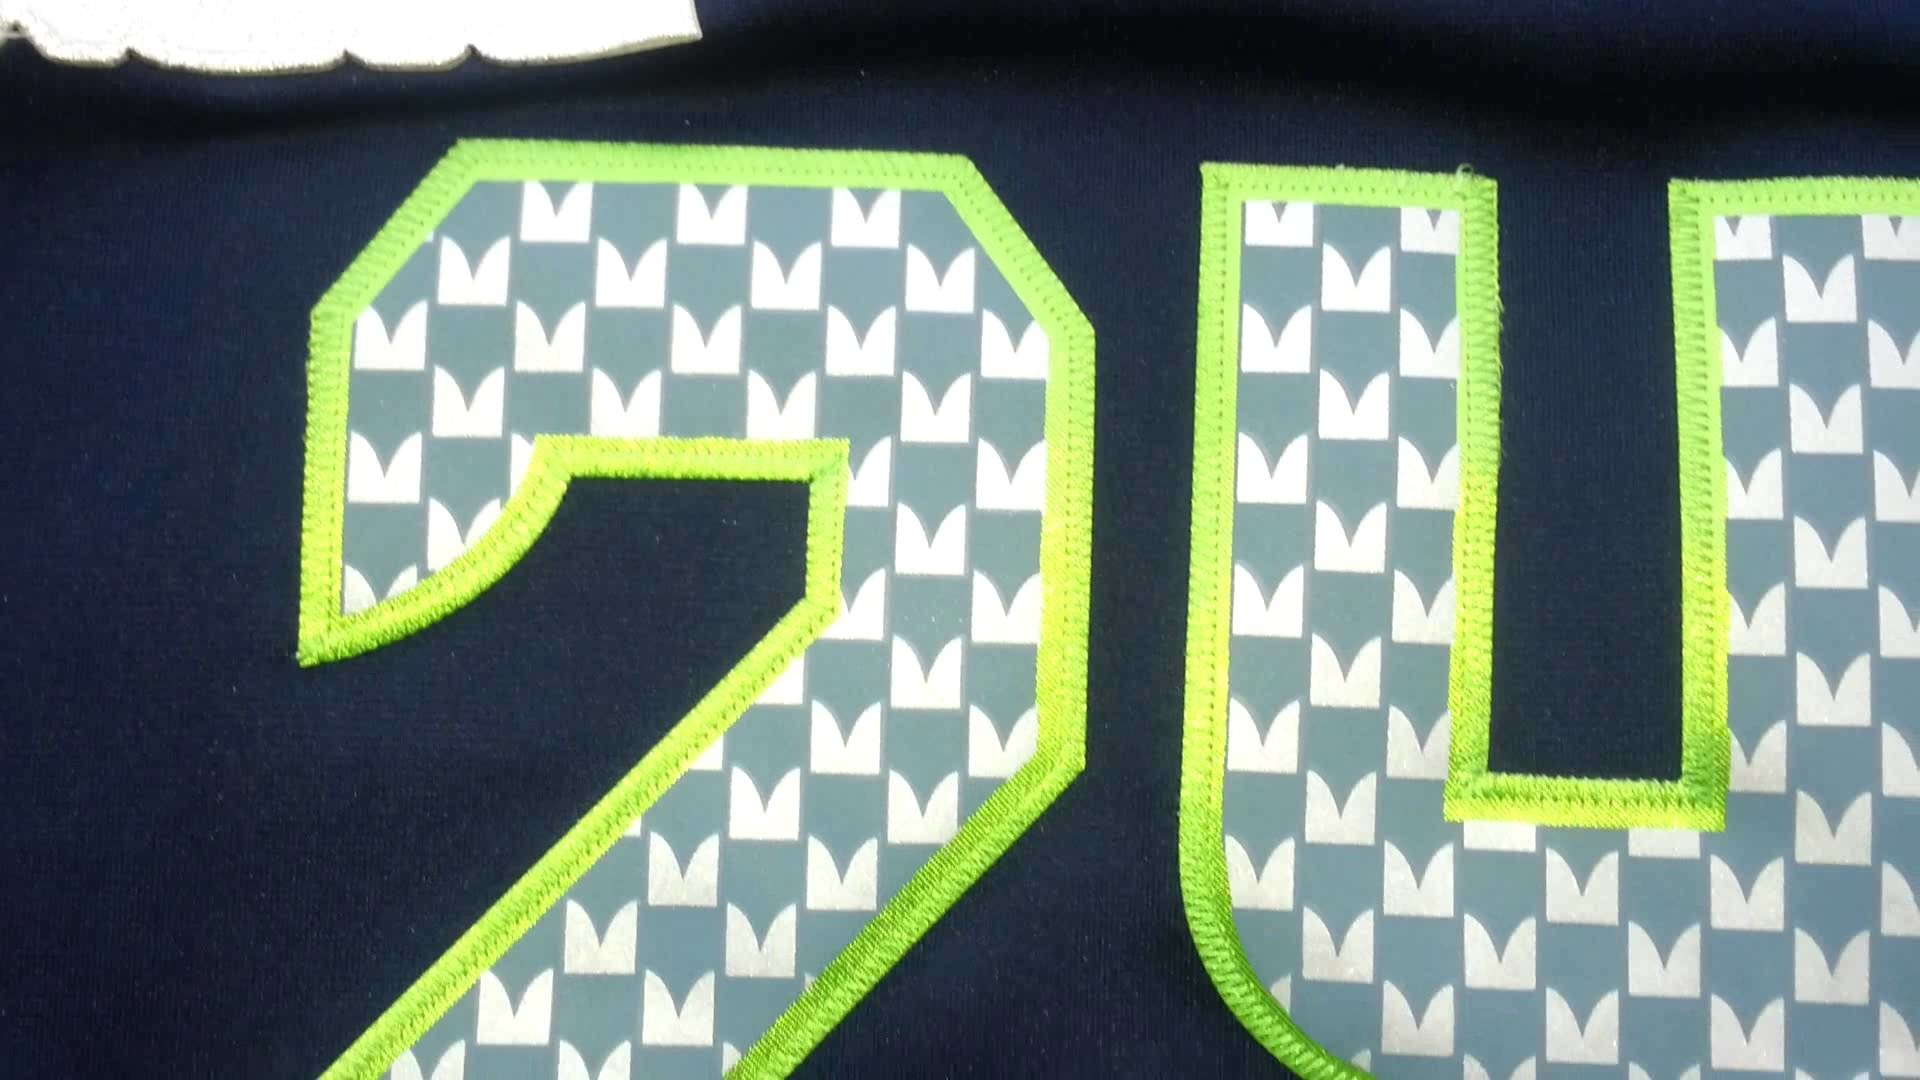 1920x1080 cheap authentic 2014 new NIKE ELITE NFL jerseys Nike Seattle Seahawks 24  Lynch jerseys.mp4 - YouTube